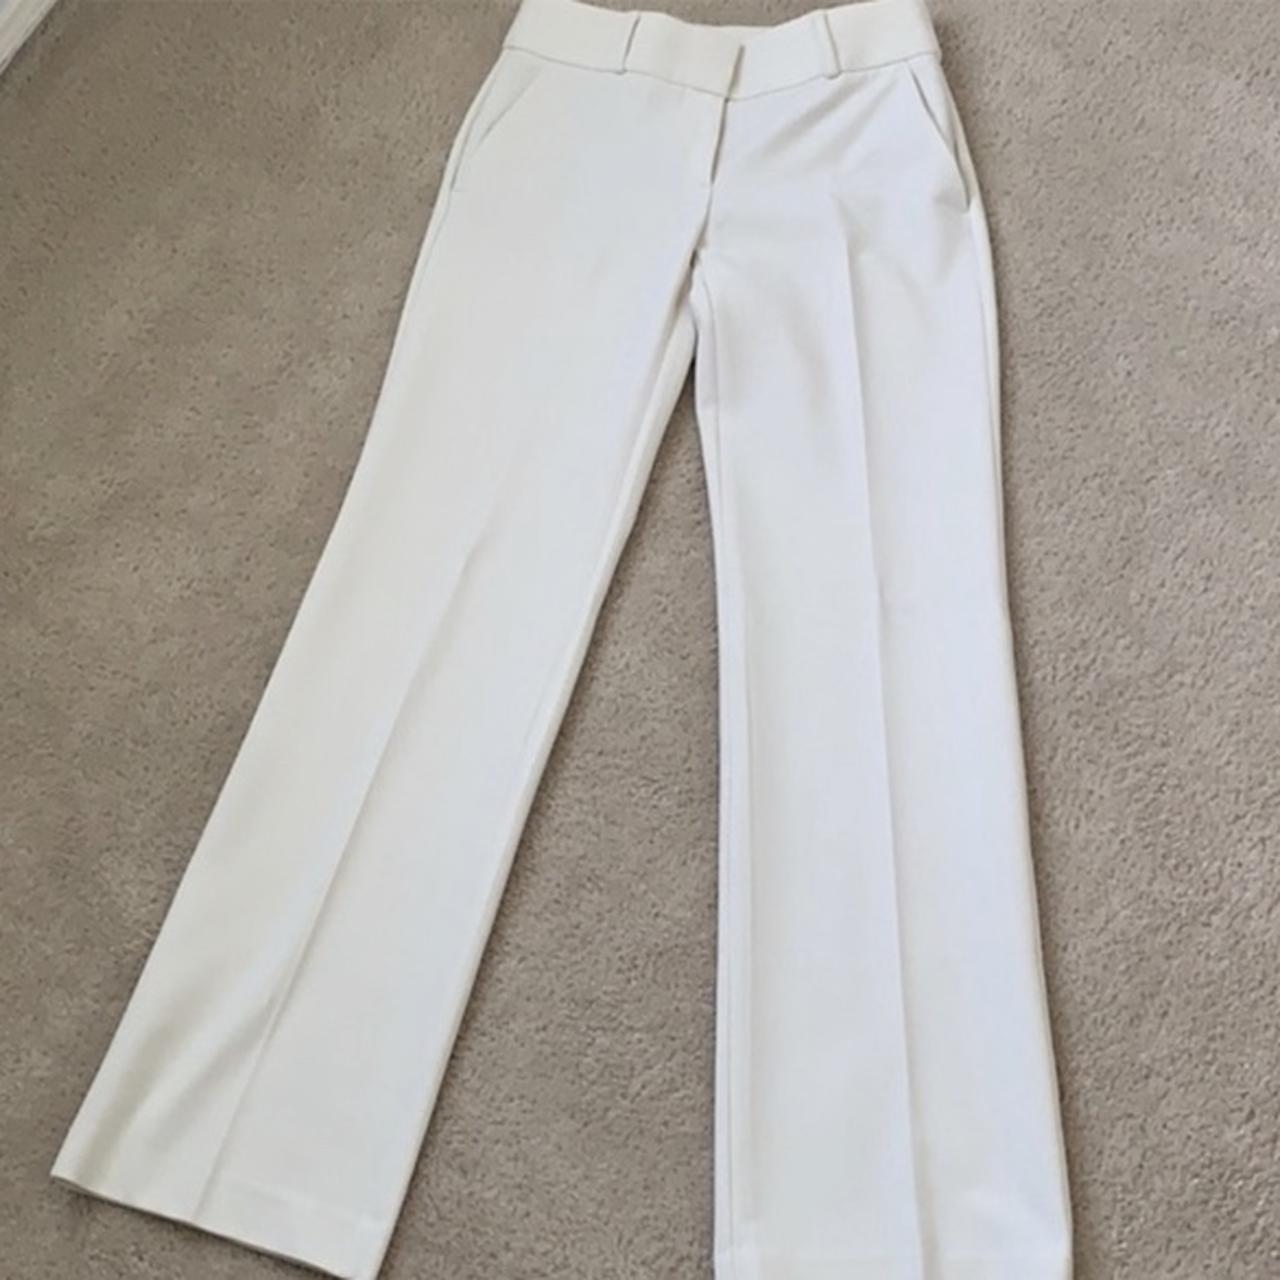 White trouser pant Julie Loft trousers Size 00 .... - Depop